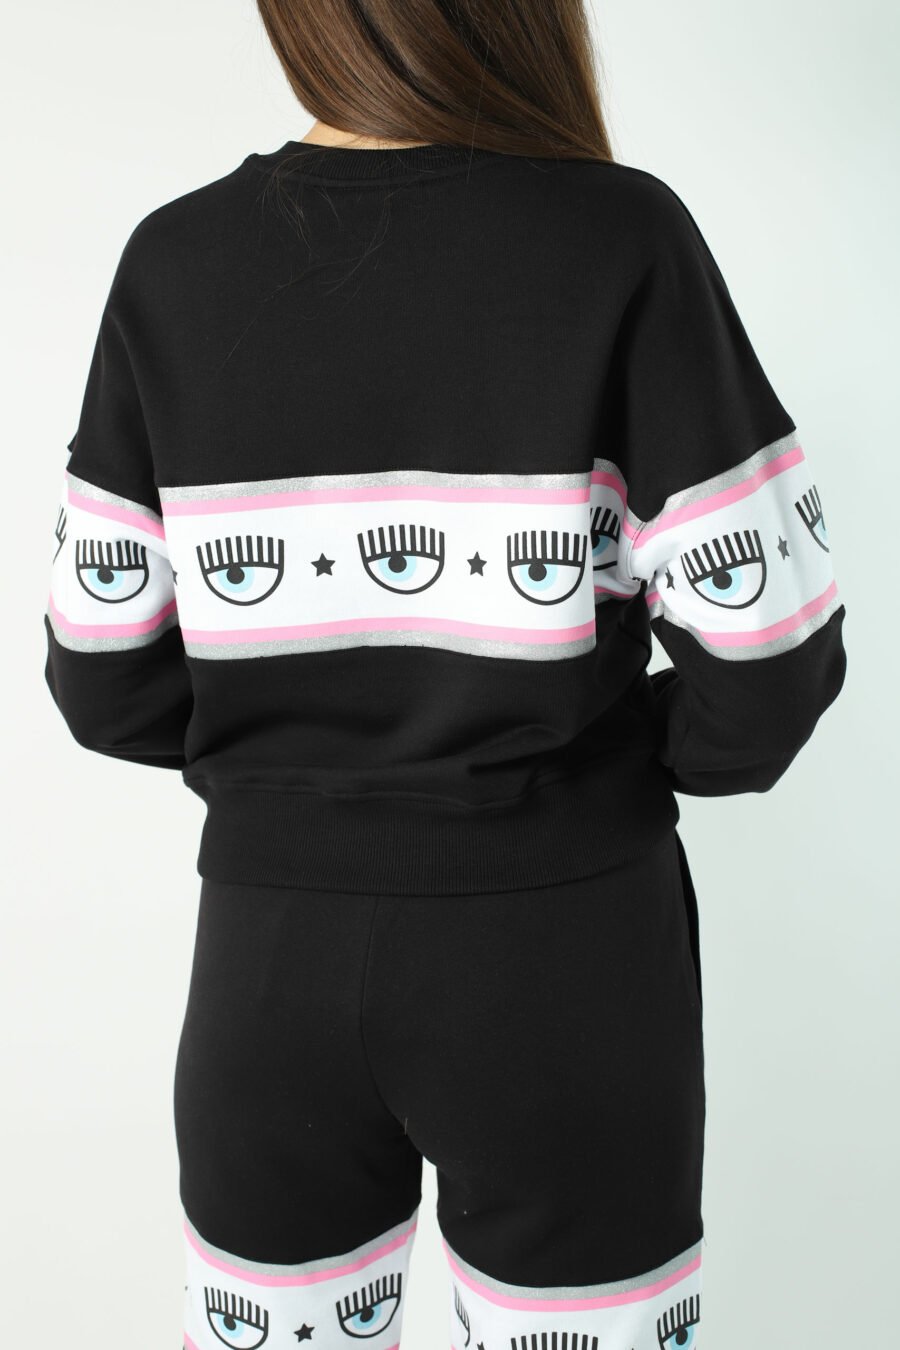 Schwarzes Sweatshirt mit Augenlogo auf Band - Fotos 2784